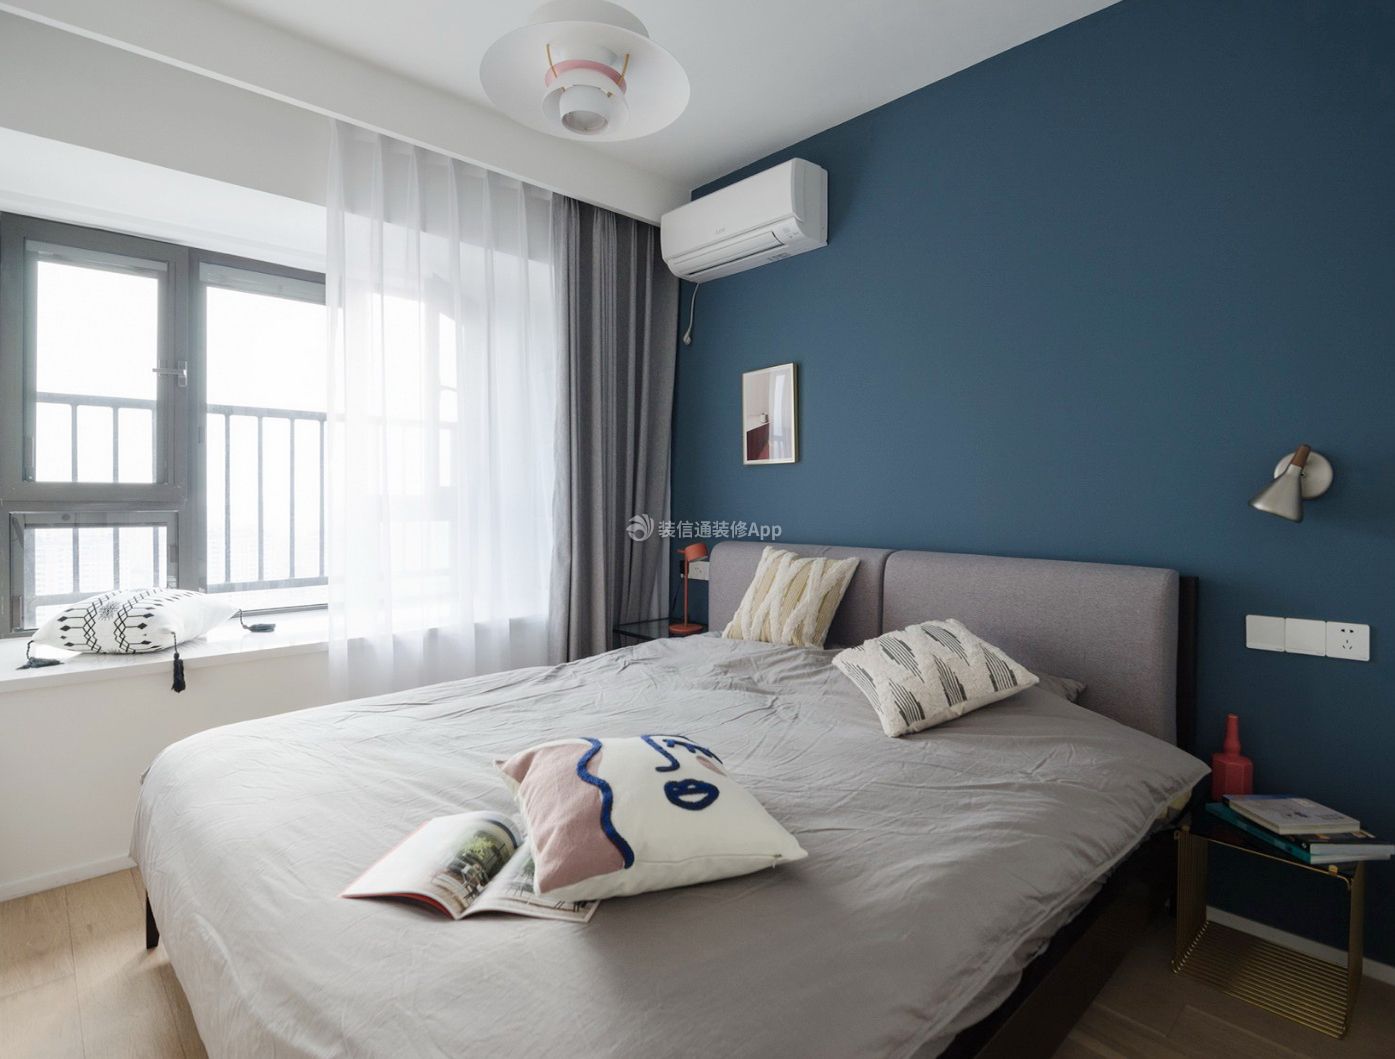 90平米房屋卧室蓝色背景墙装修效果图